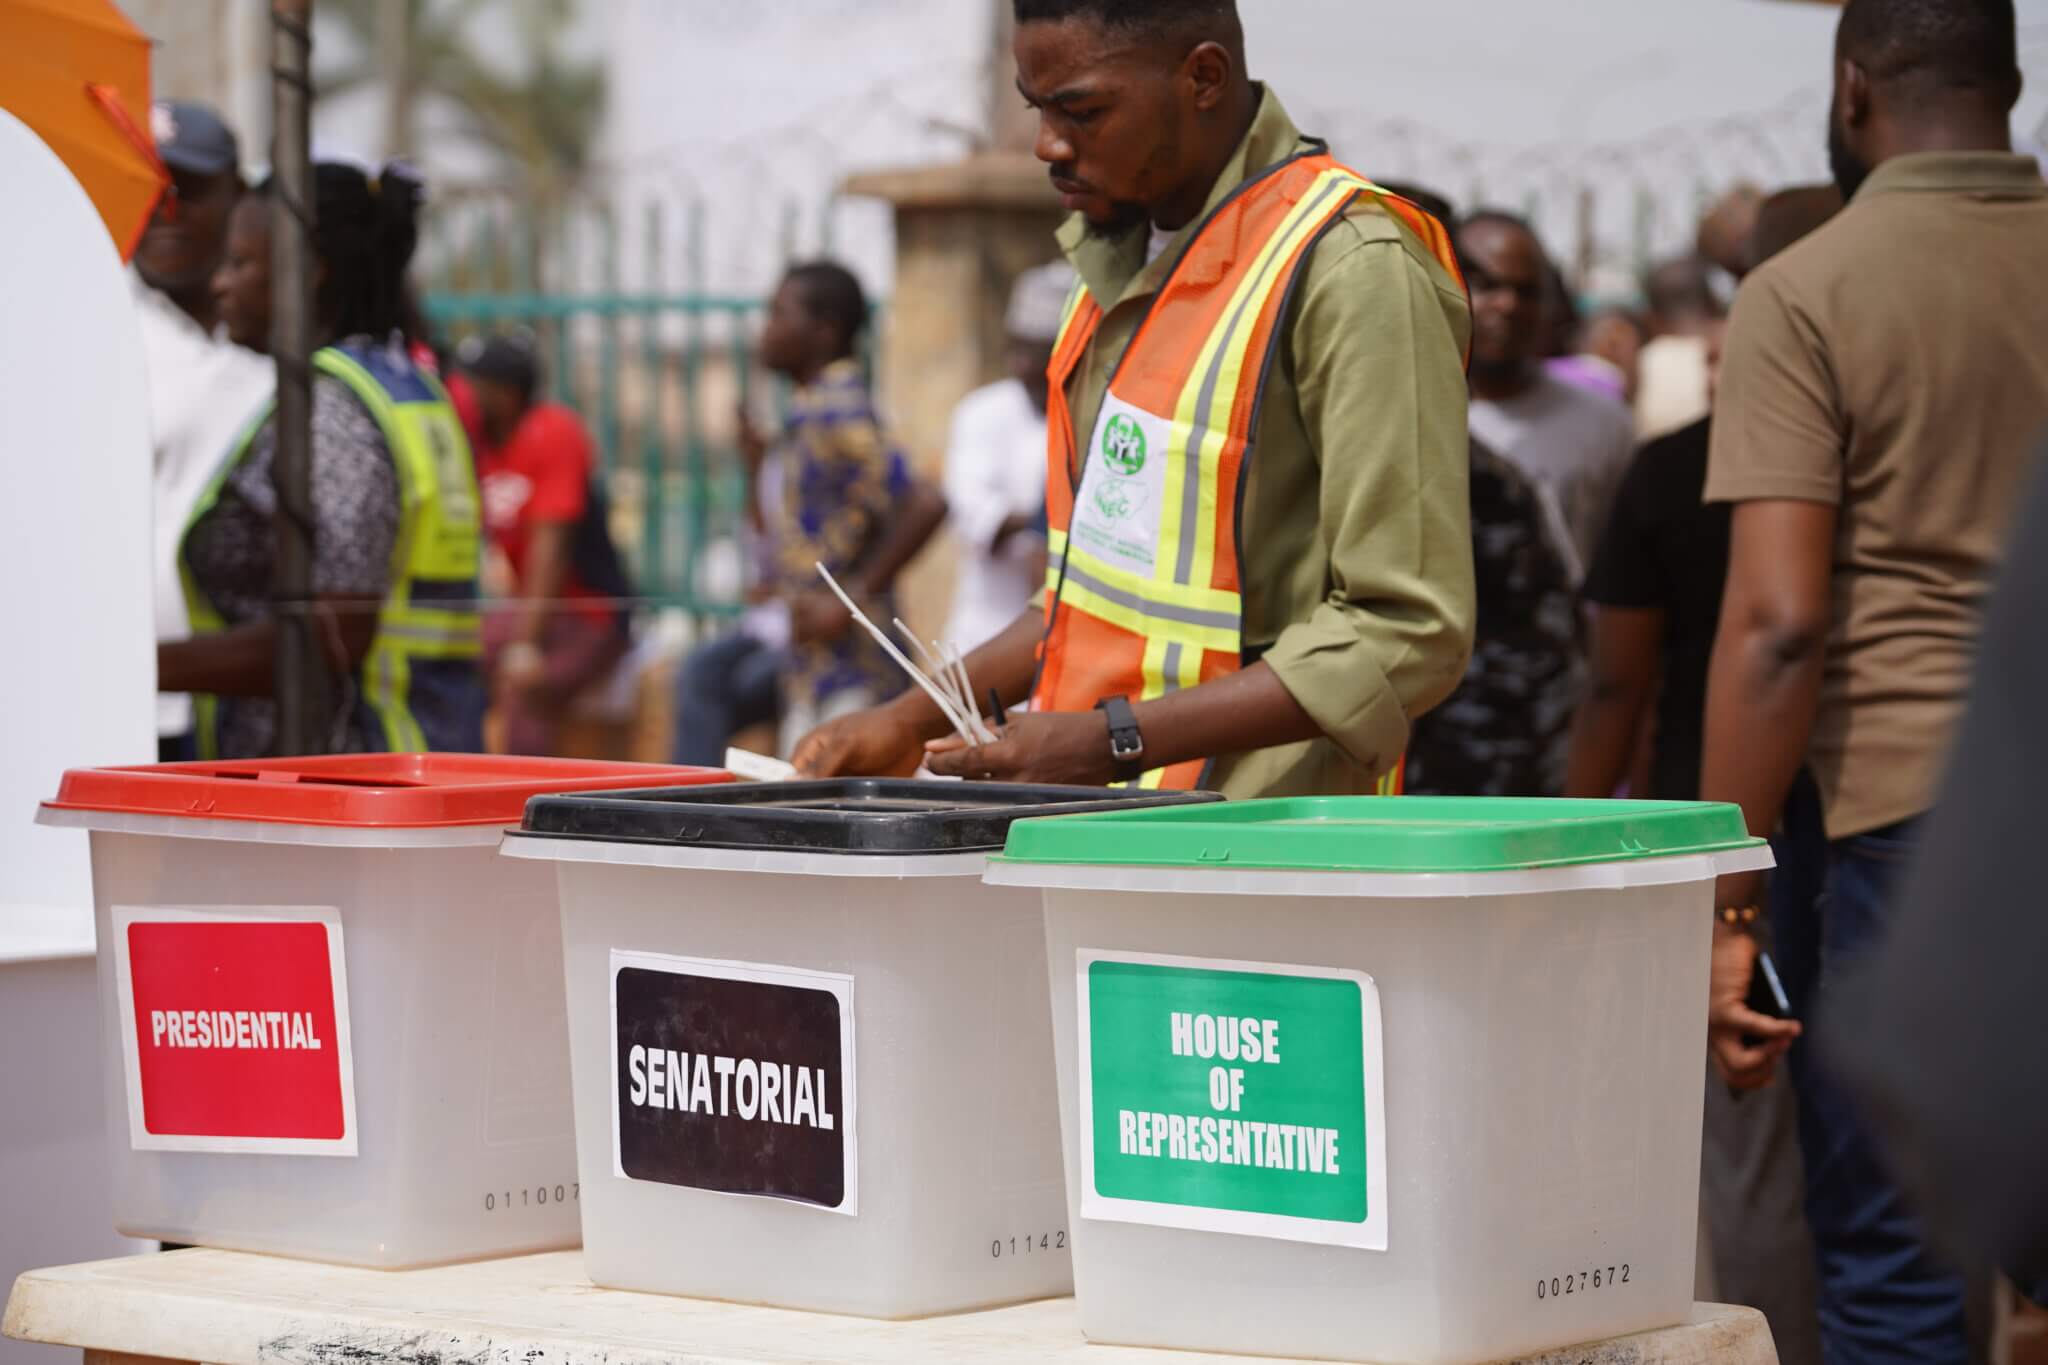 Mensch beim Wählen vor den Urnen in Nigeria